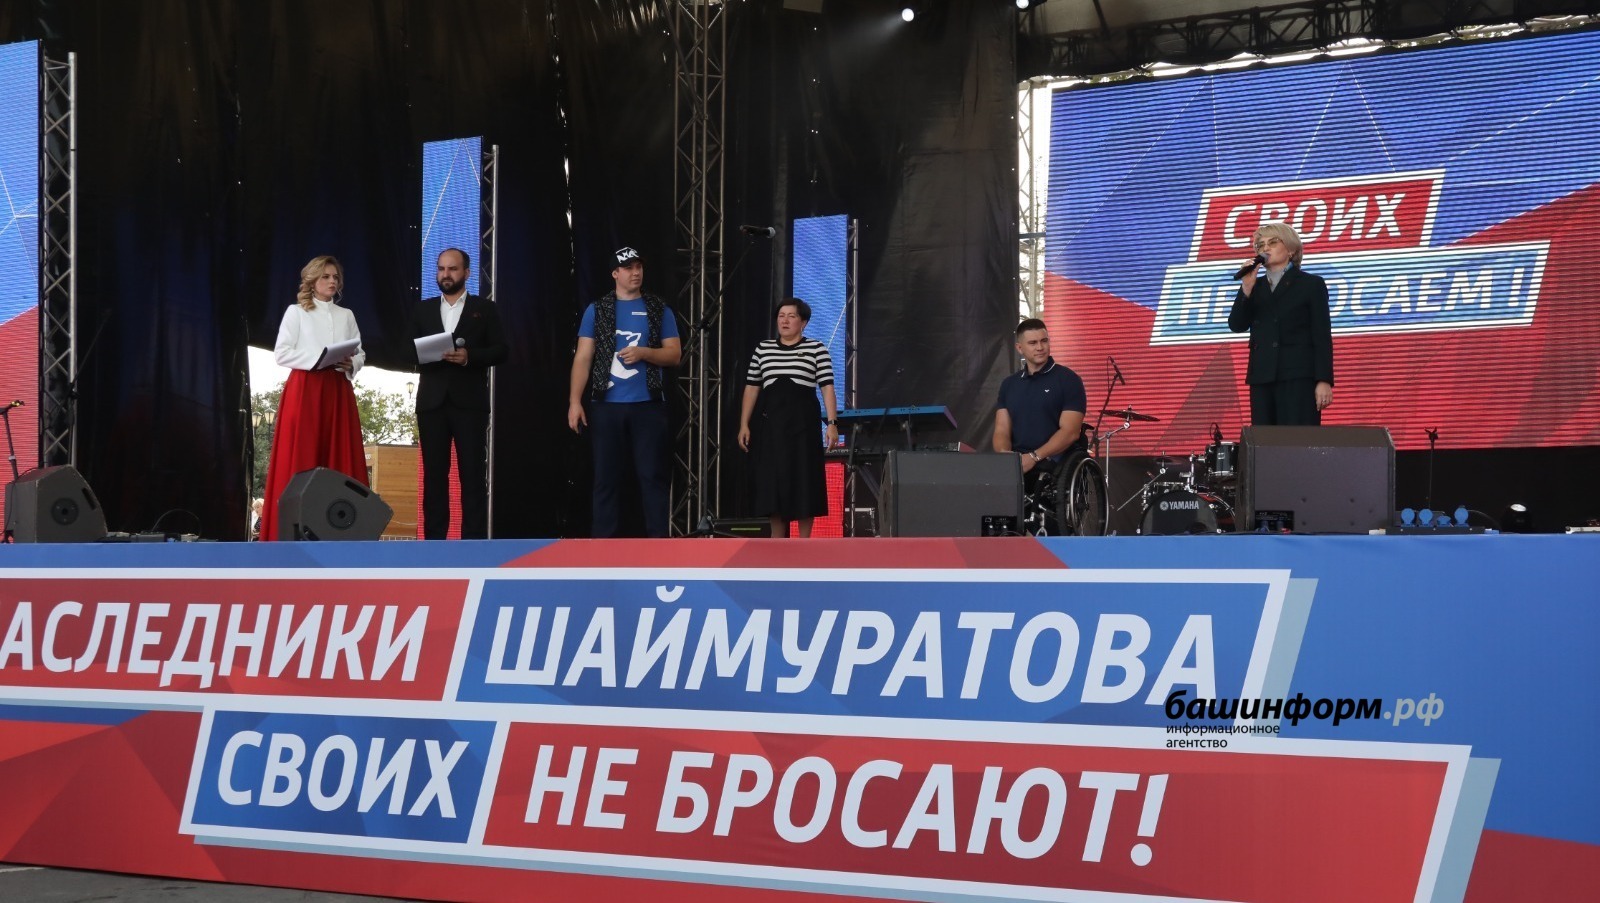 В Уфе на митинг-концерт «Потомки Шаймуратова своих не бросают!» вышли более 20 тысяч человек